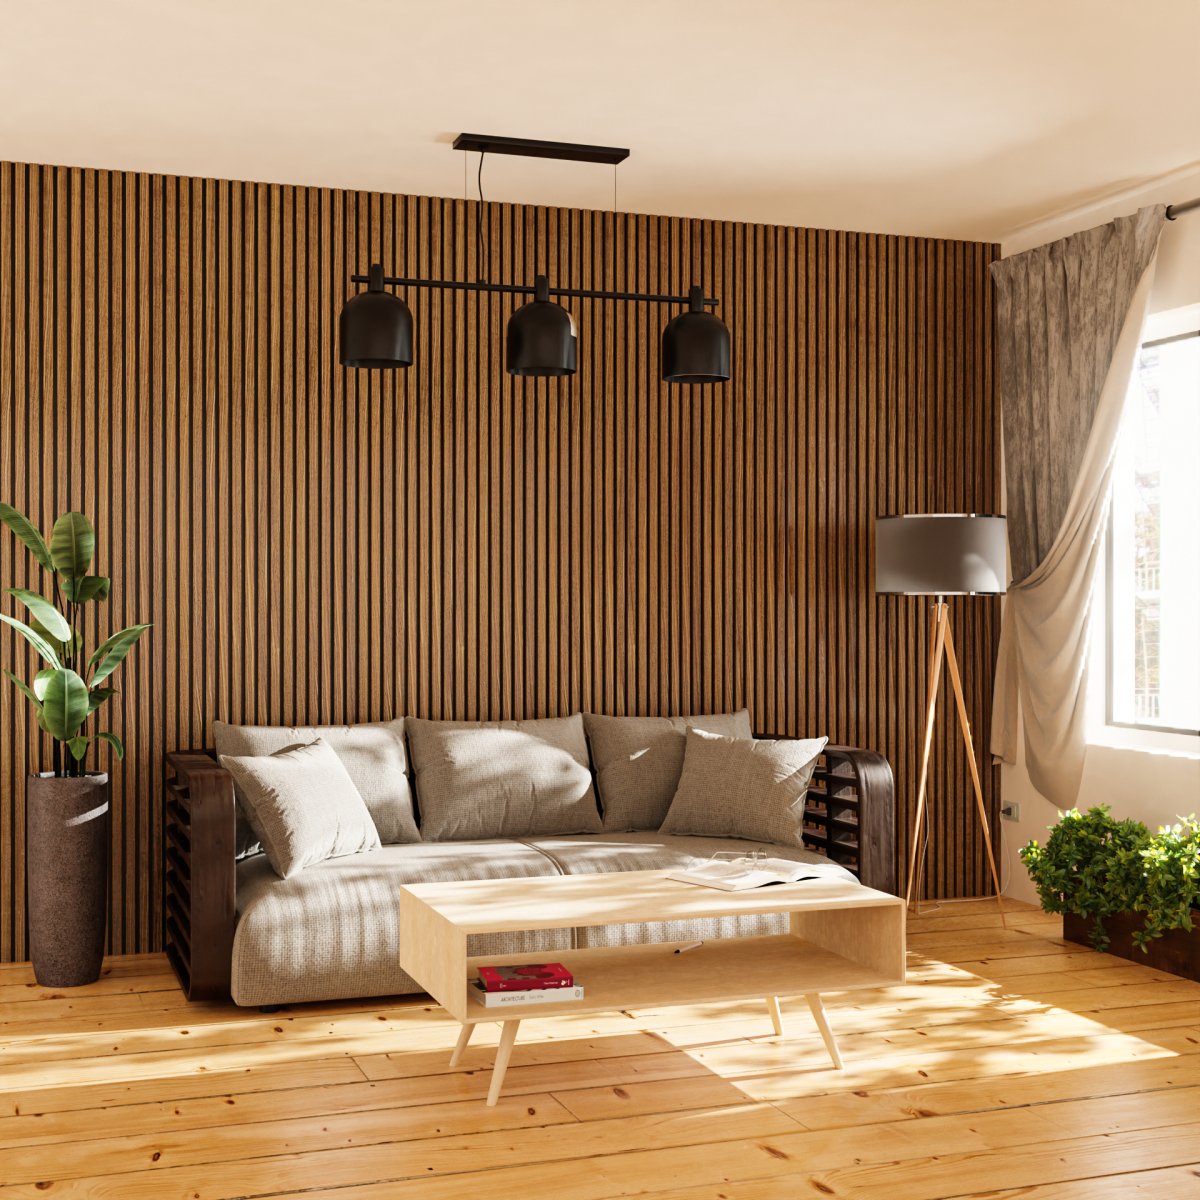 Acoustic Wood Panels & designer furniture